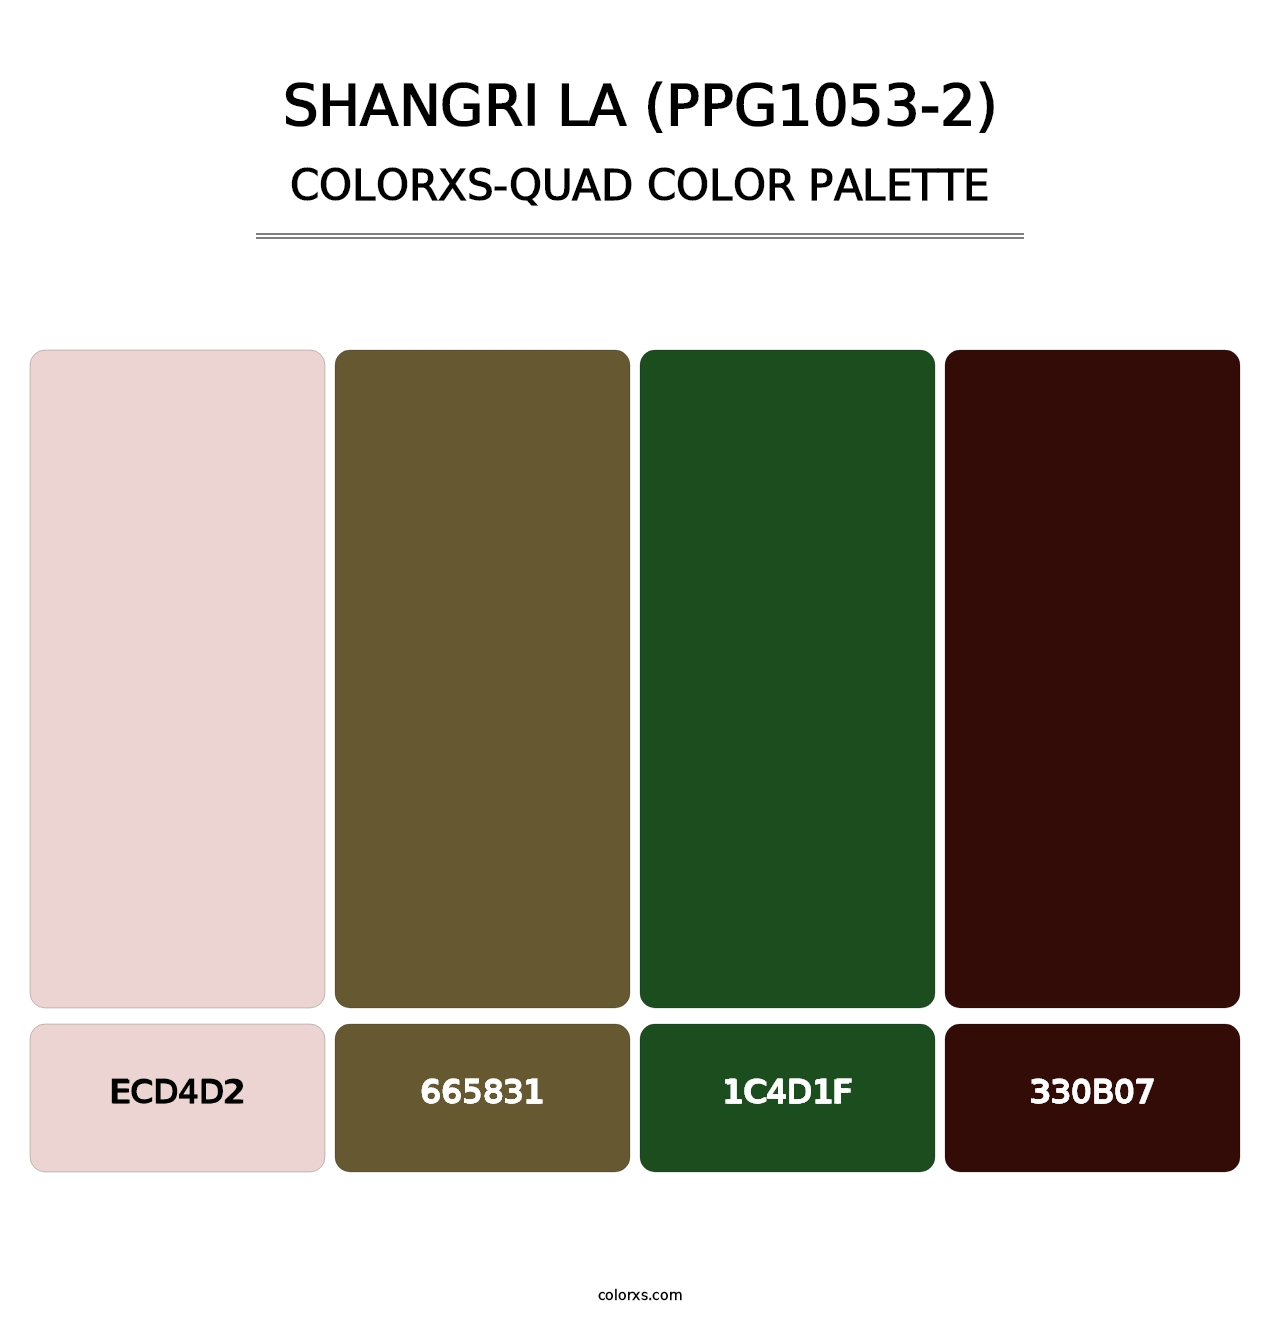 Shangri La (PPG1053-2) - Colorxs Quad Palette